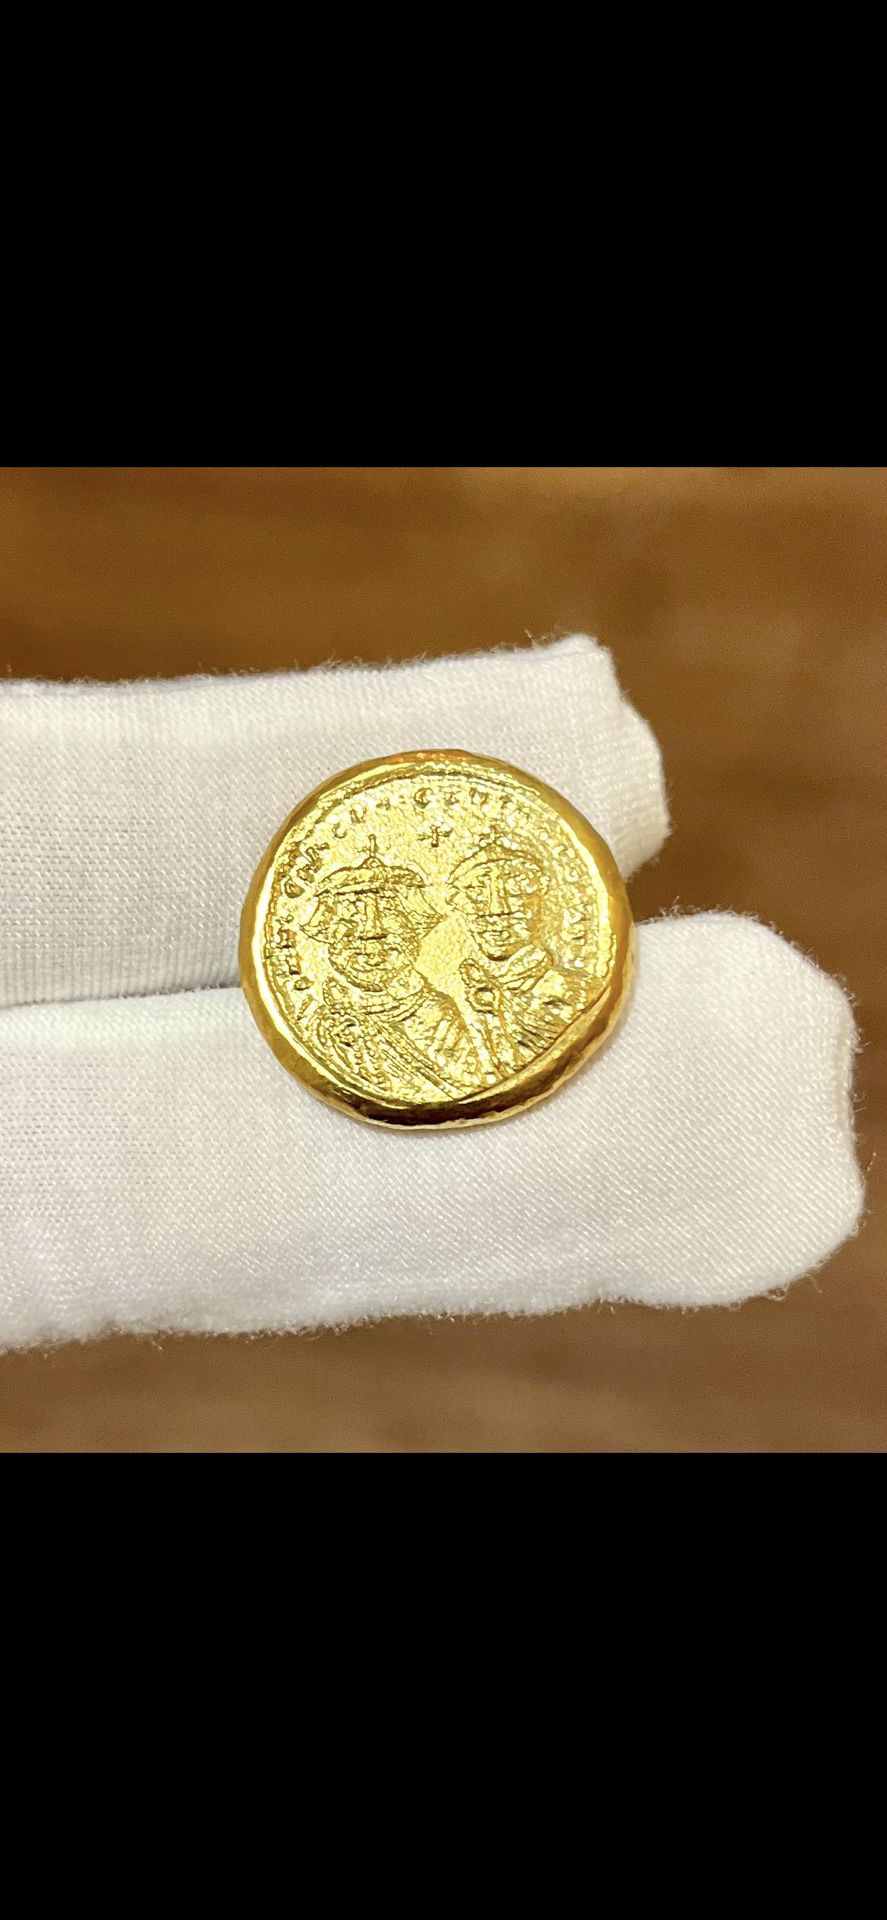 Byzantine Empire Commemorative Coin